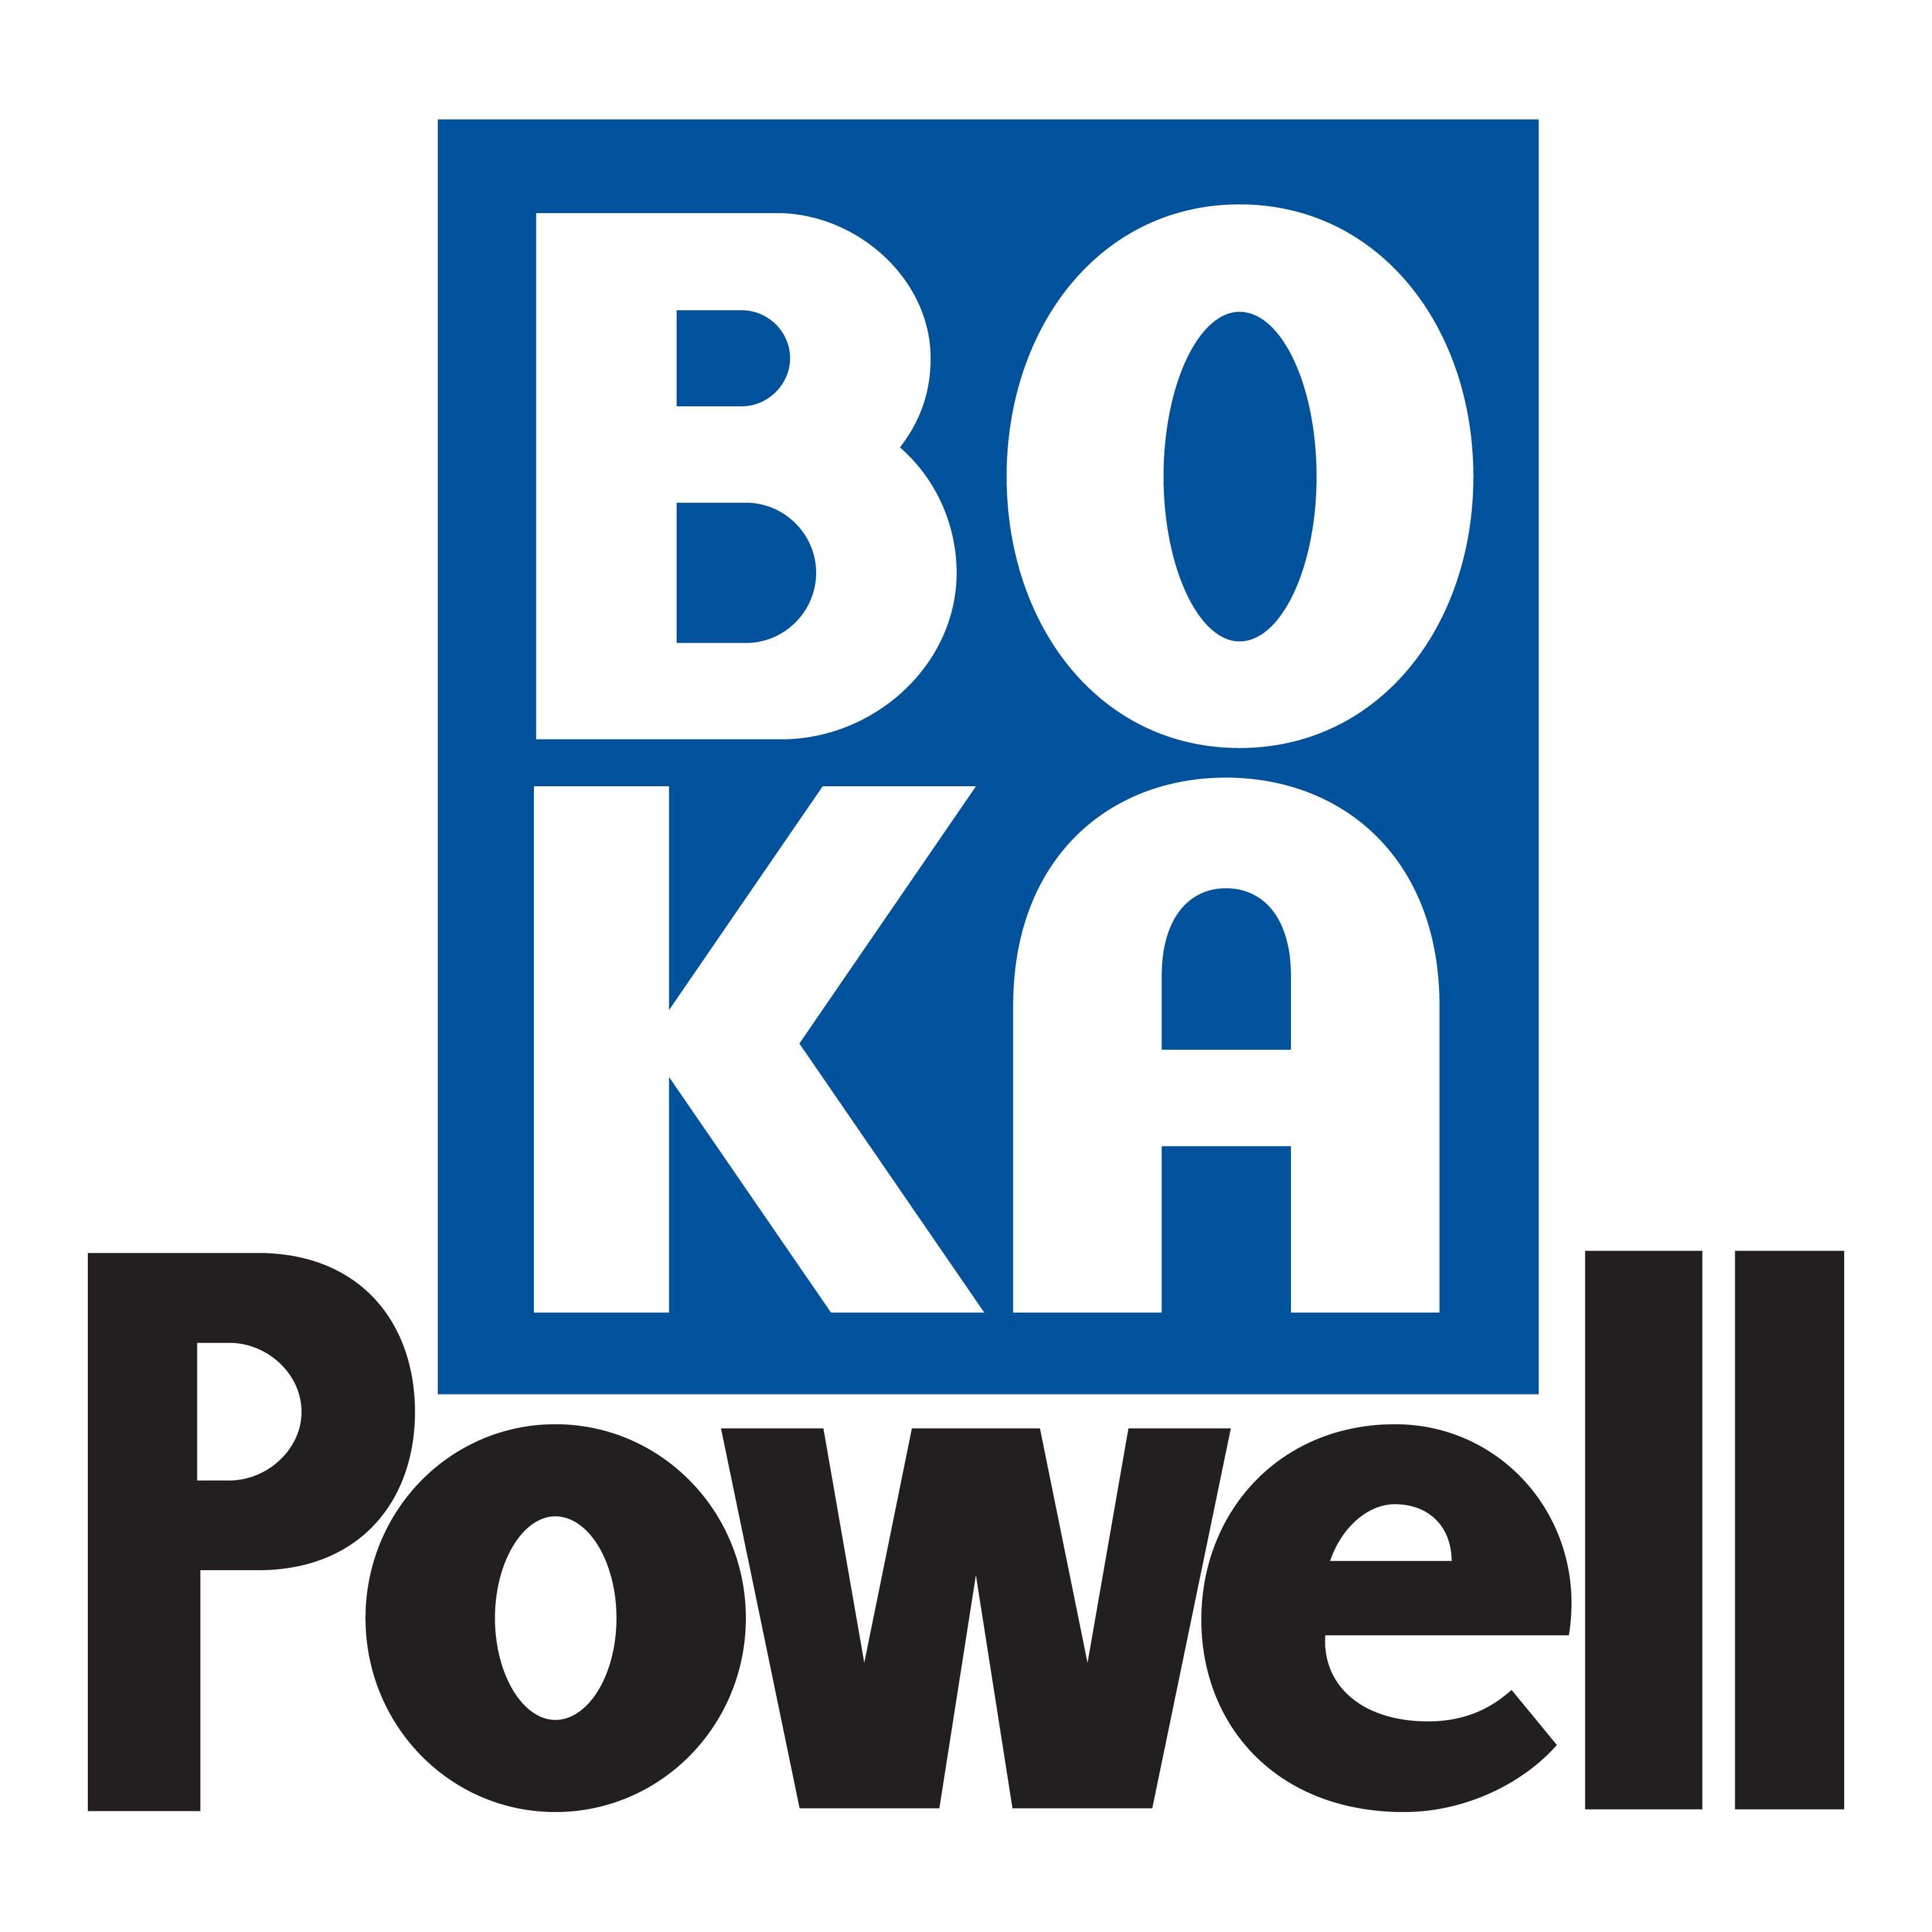 BOKA POWELL logo